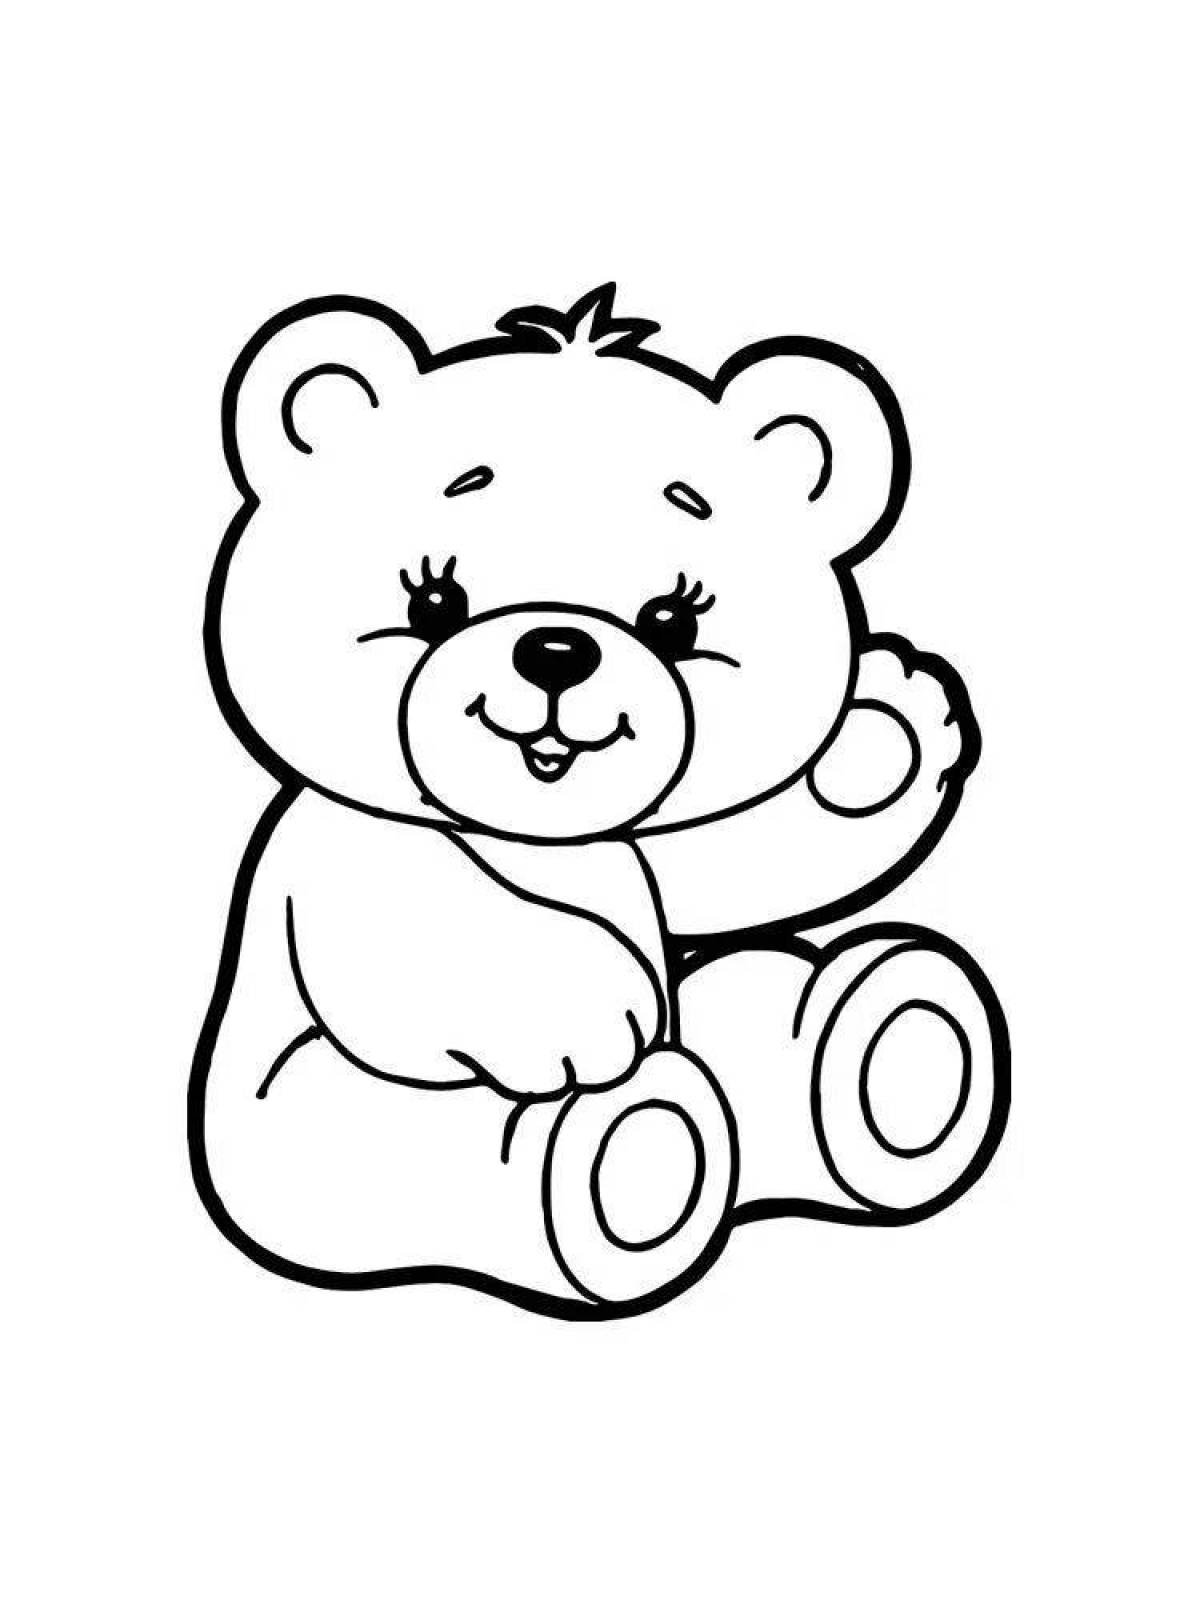 Раскраска медведь для детей 2 3 лет. Раскраска. Медвежонок. Медведь раскраска. Медвежонок раскраска для детей. Мишка для раскрашивания для детей.